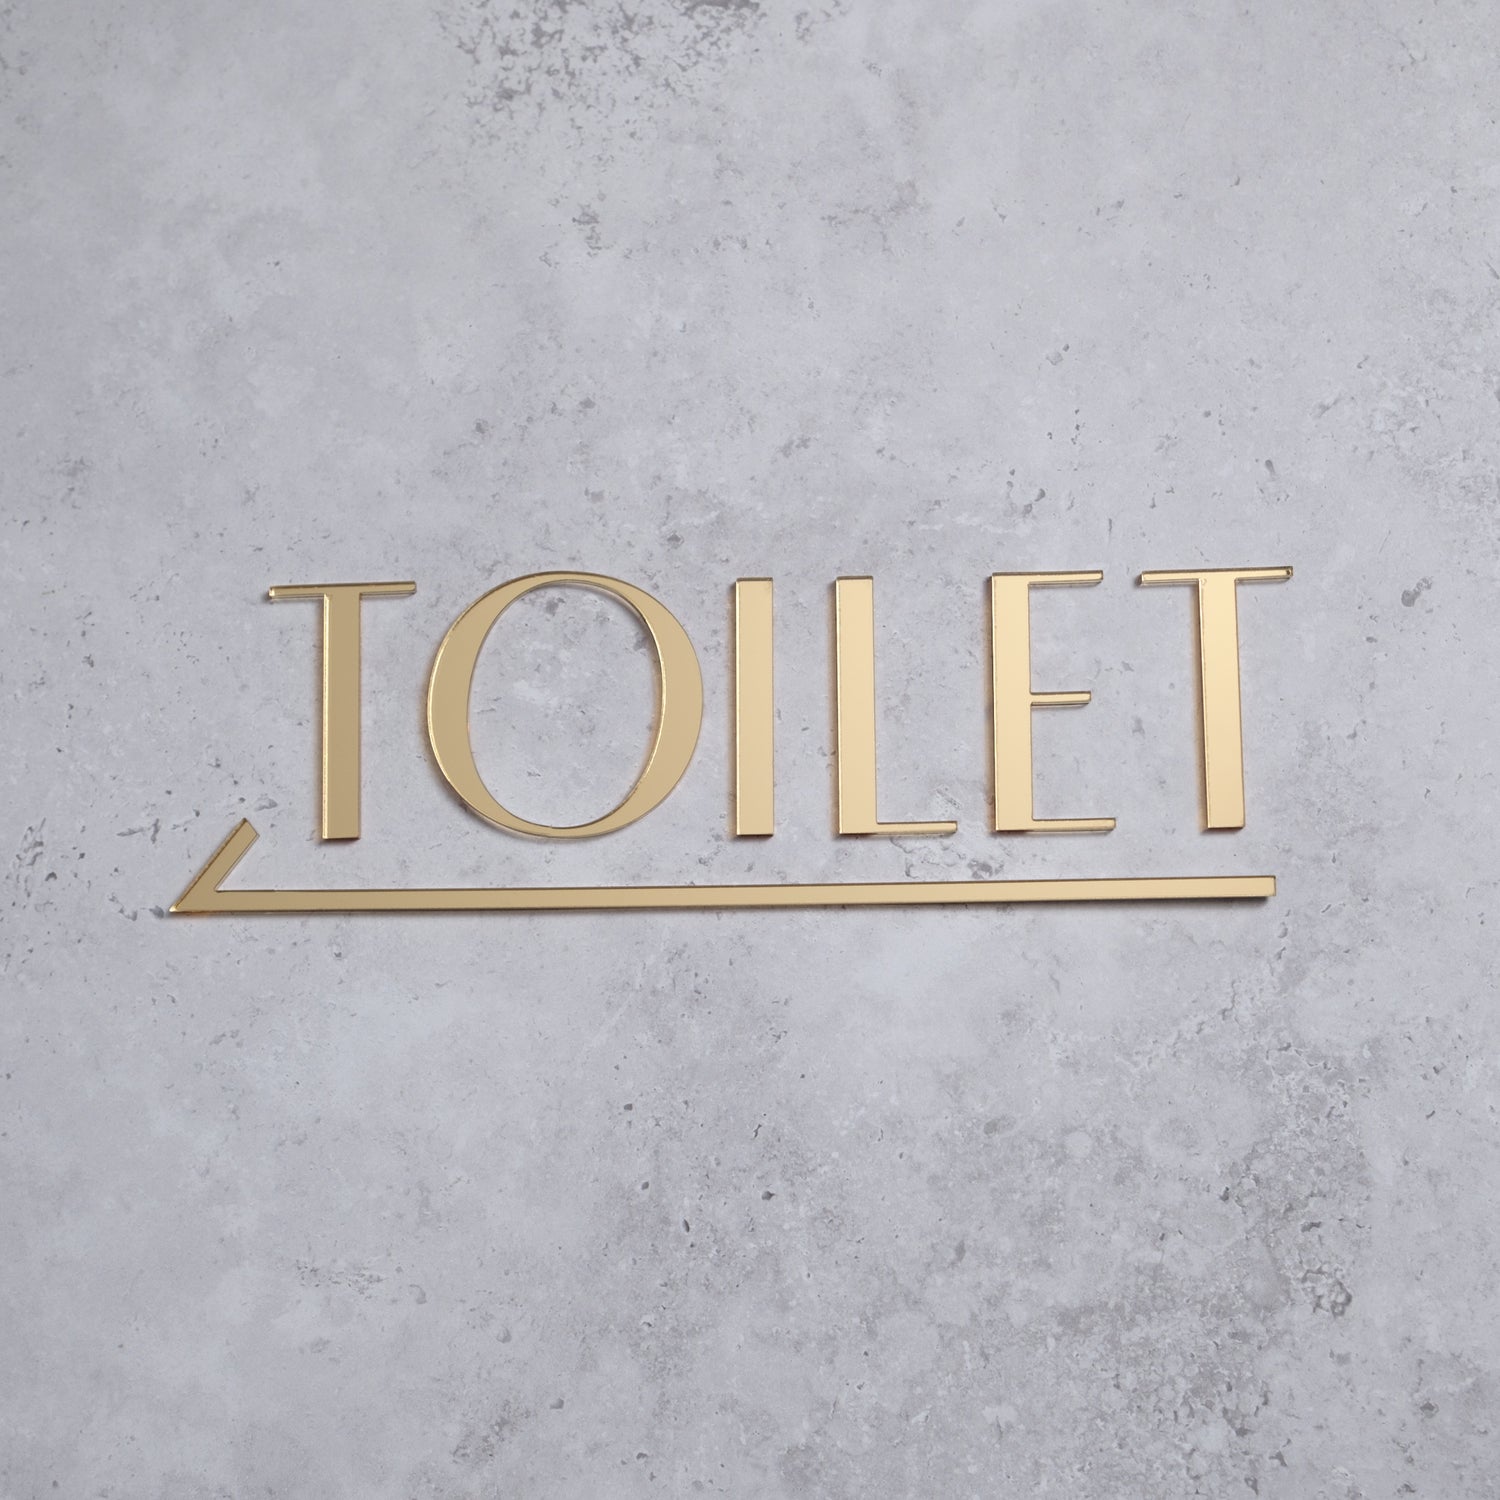 Toilet door signs